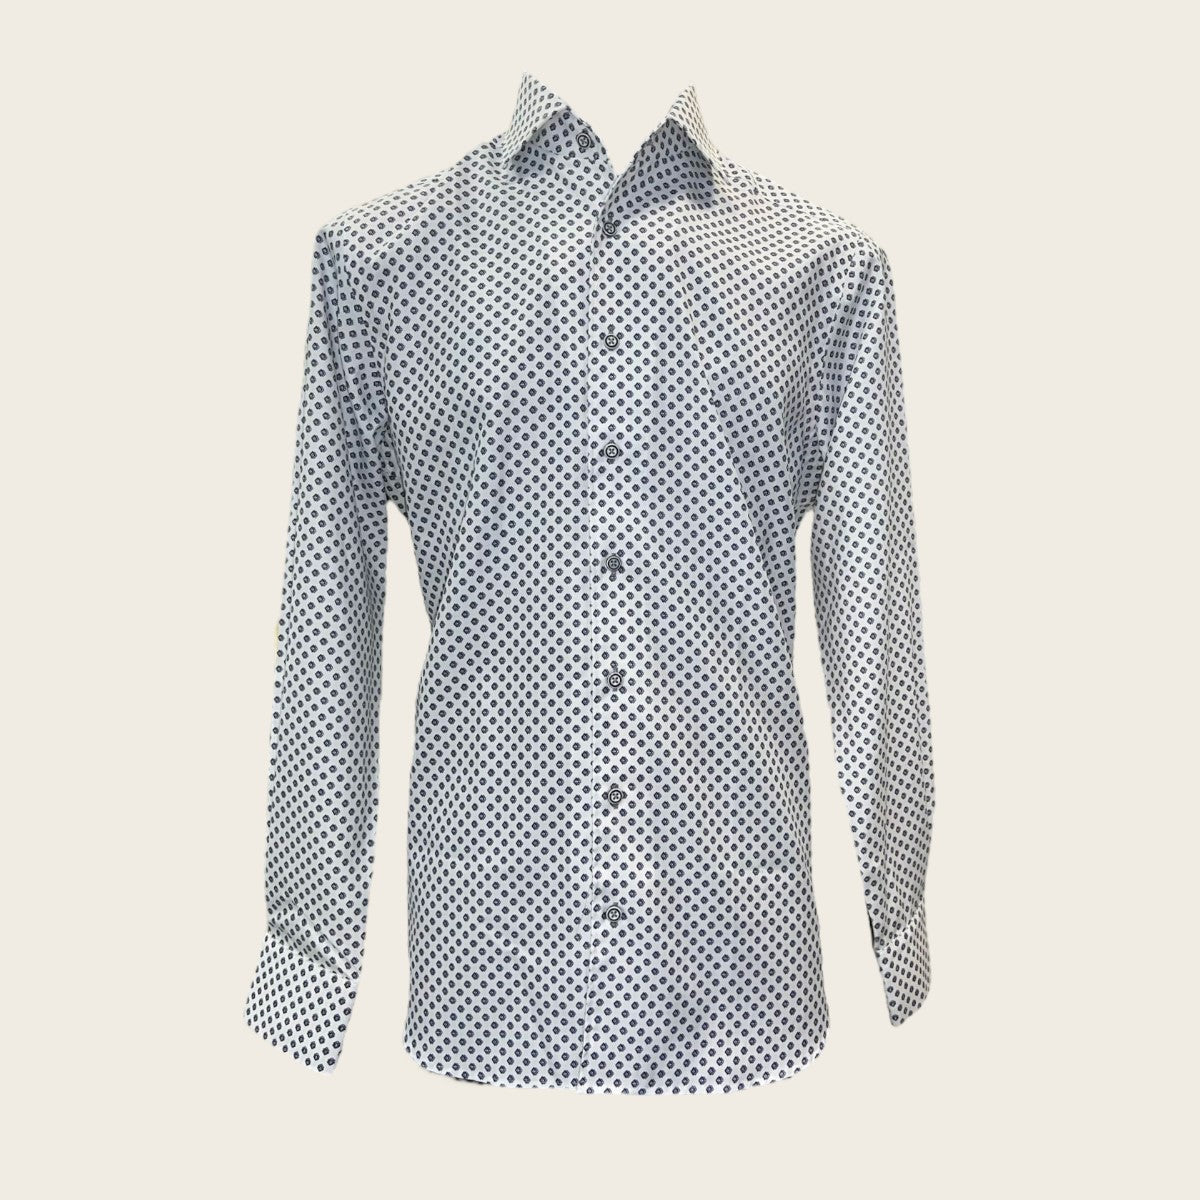 White print dots shirt, mesmerizing geometric dots motifs print